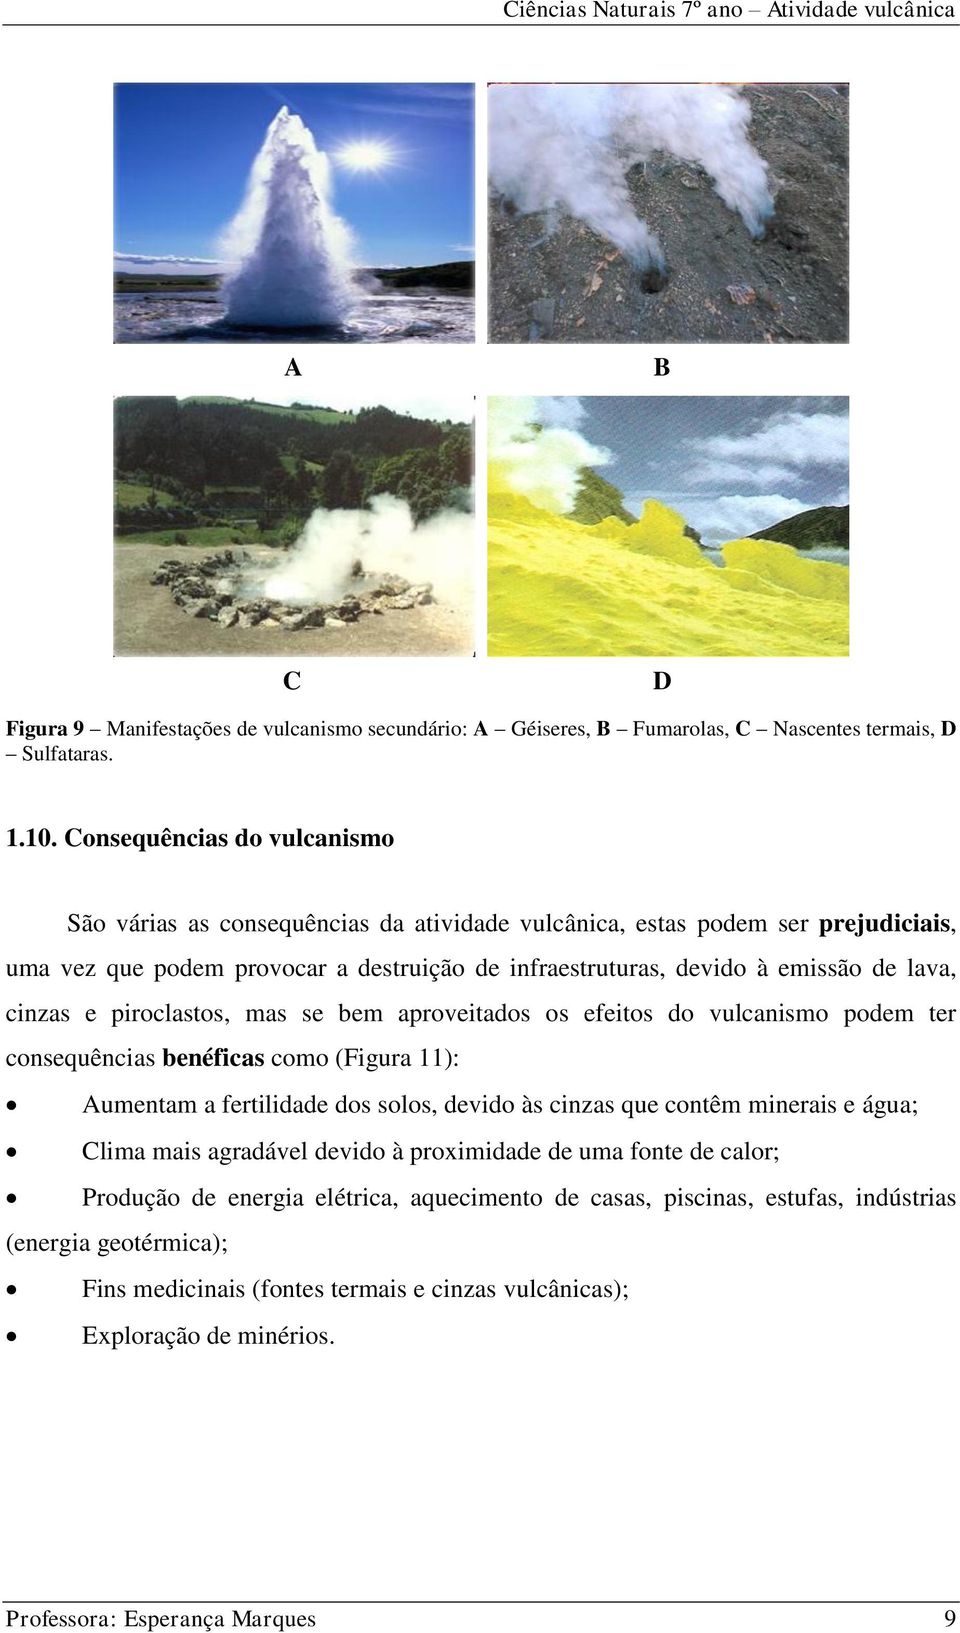 cinzas e piroclastos, mas se bem aproveitados os efeitos do vulcanismo podem ter consequências benéficas como (Figura 11): Aumentam a fertilidade dos solos, devido às cinzas que contêm minerais e